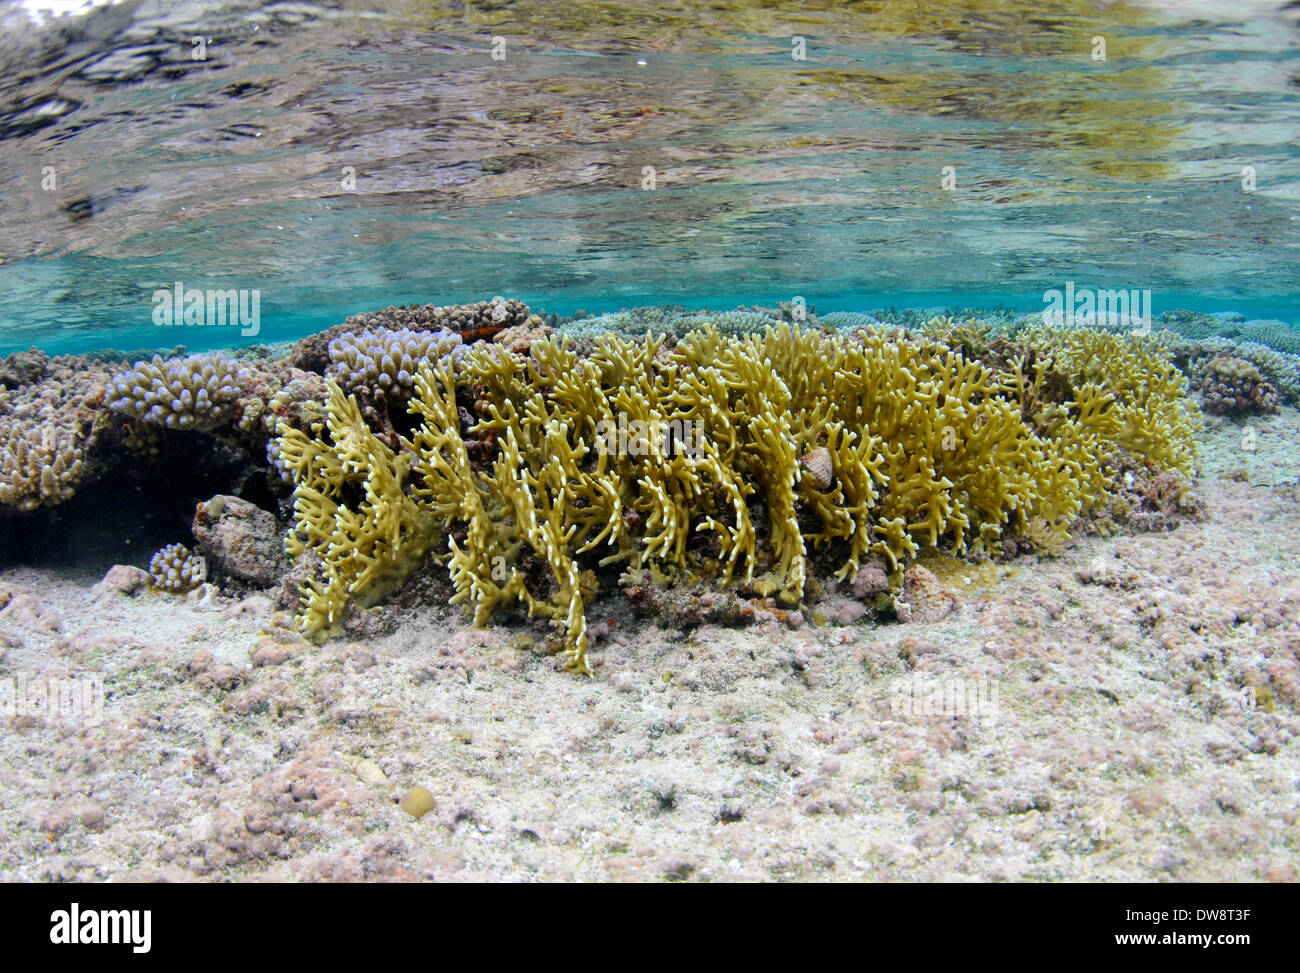 Fire coral, Millepora sp., dans les eaux peu profondes de Nukuifala, îlots, Uvea Wallis et Futuna, Pacifique Sud Banque D'Images